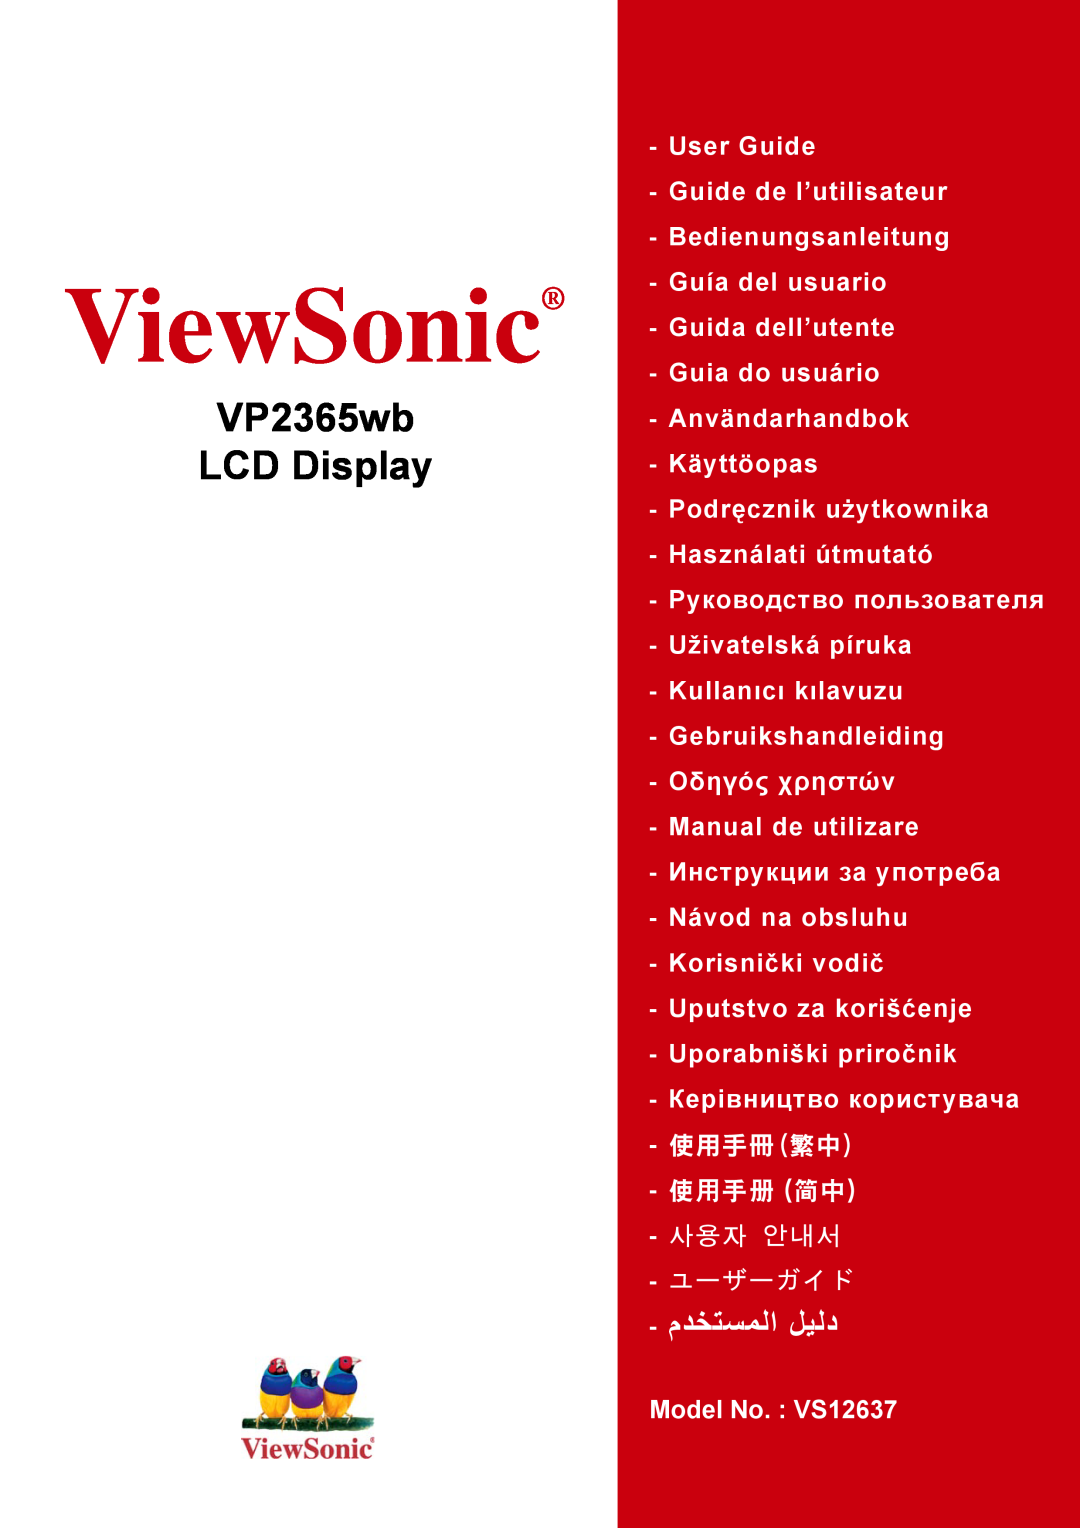 ViewSonic VS12637 manual ViewSonic, VP2365wb LCD Display, ﻢﺪﺨﺘﺴﻤﻠﺍ ﻞﻴﻠﺪ, 使用手冊繁中 使用手冊 簡中, 사용자 안내서, ユーザーガイド 